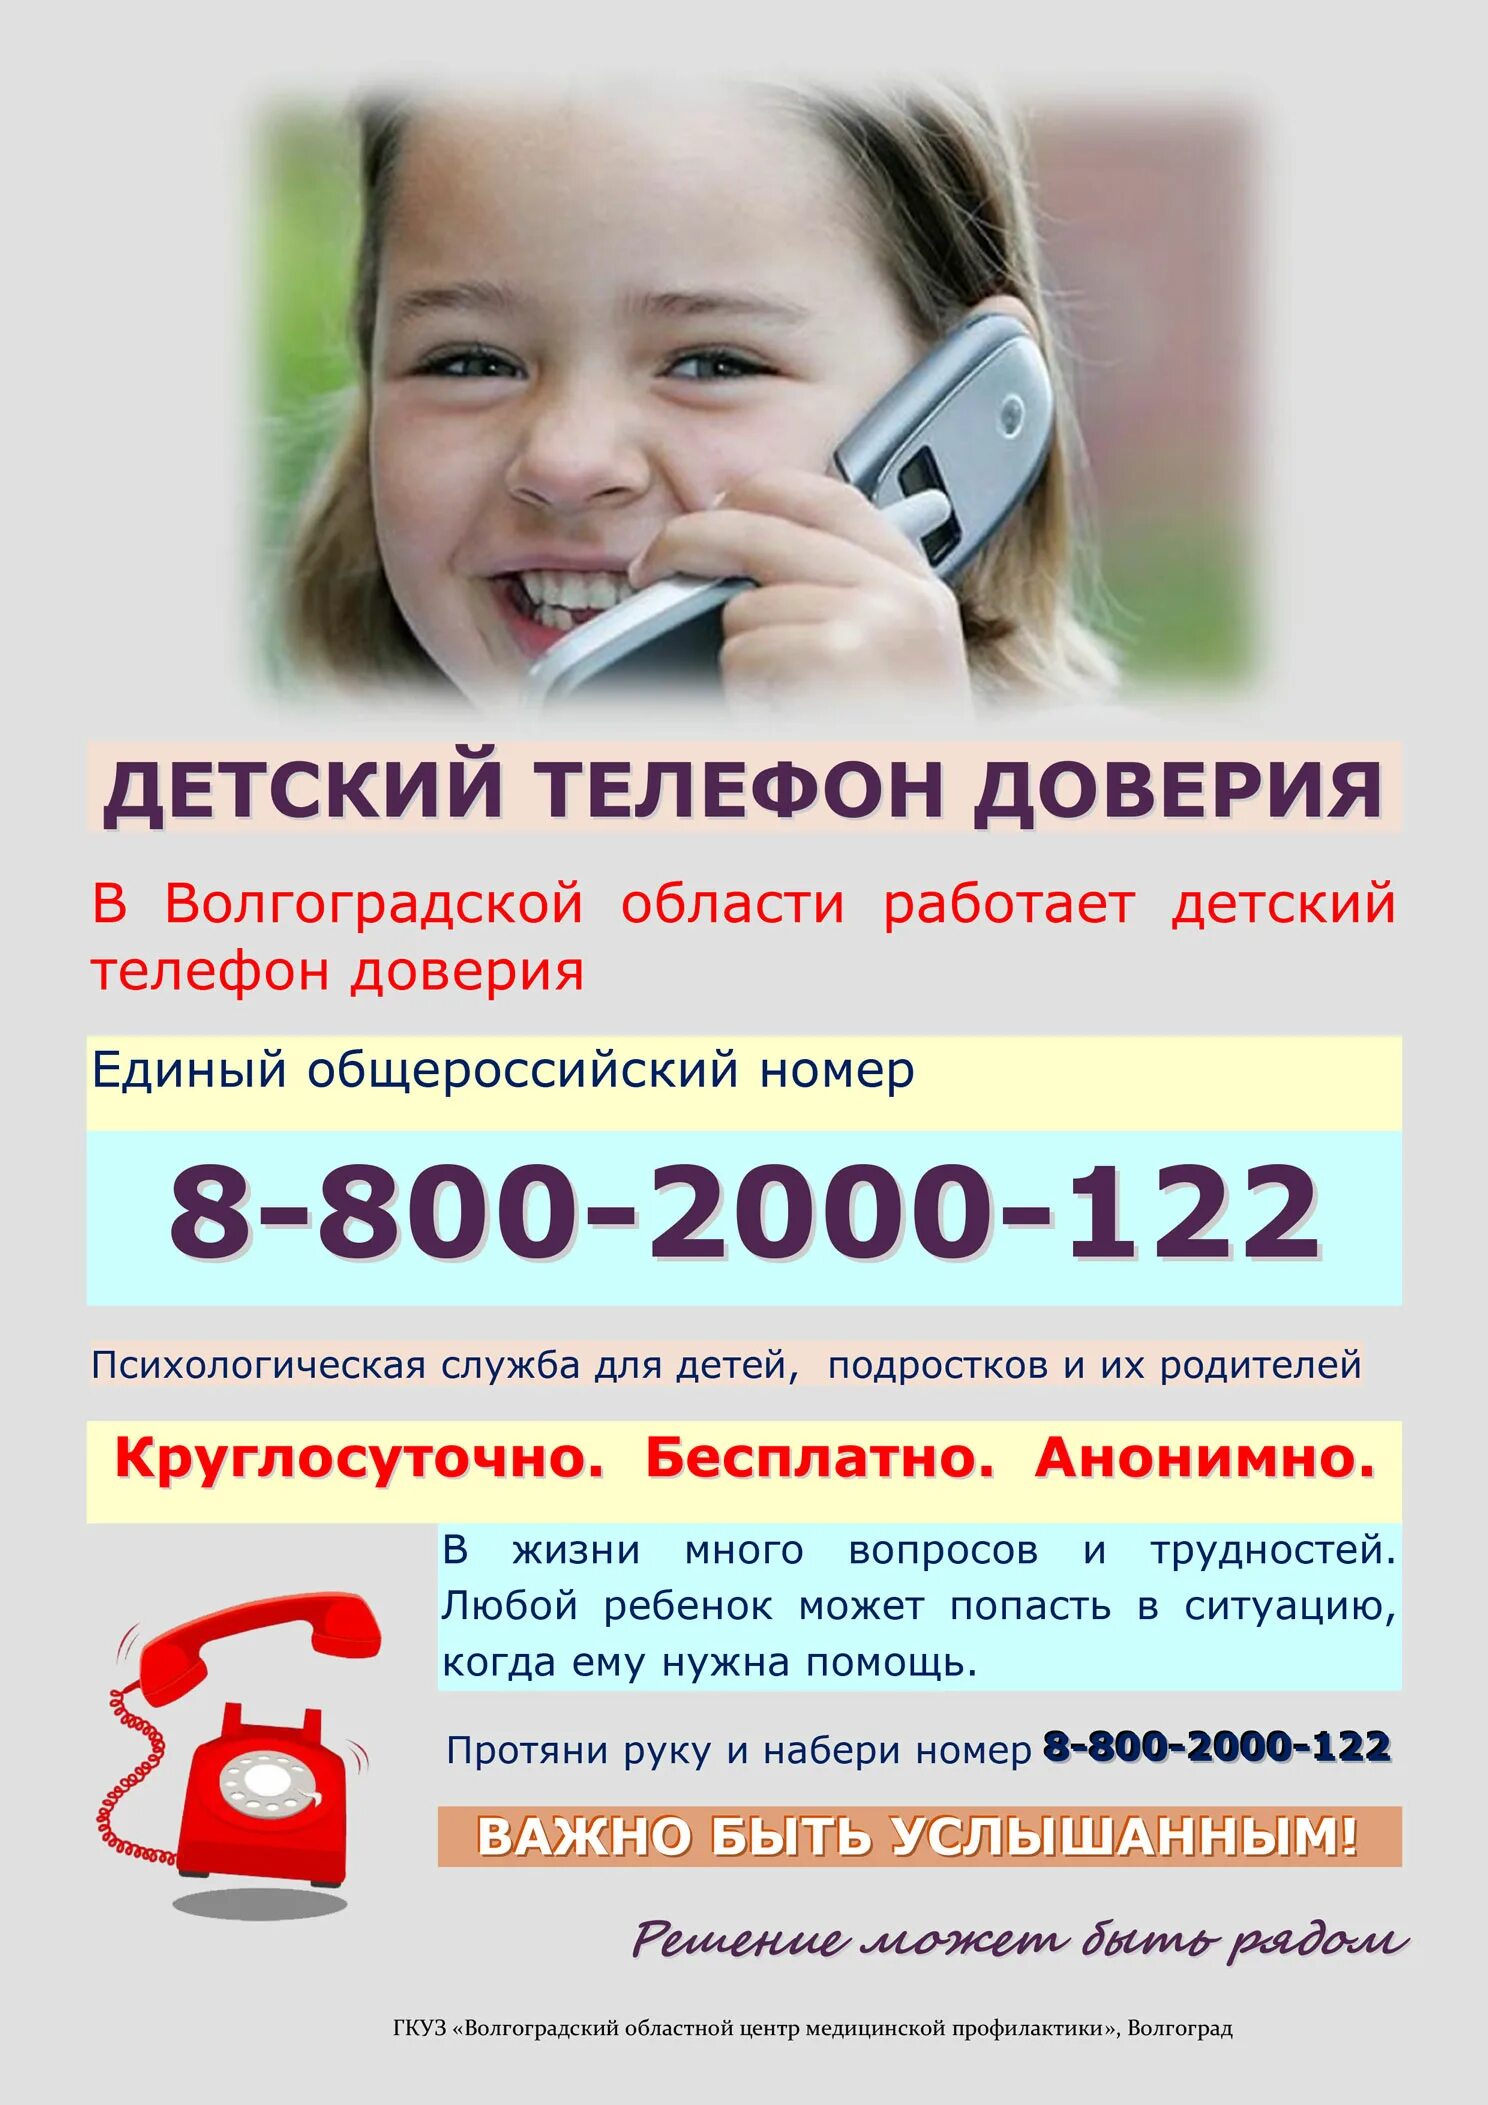 Телефон доверия. Детский телефон доверия. Телефон доверия для детей подростков и их родителей. Номер телефона доверия для детей. Служба помощи номер телефона